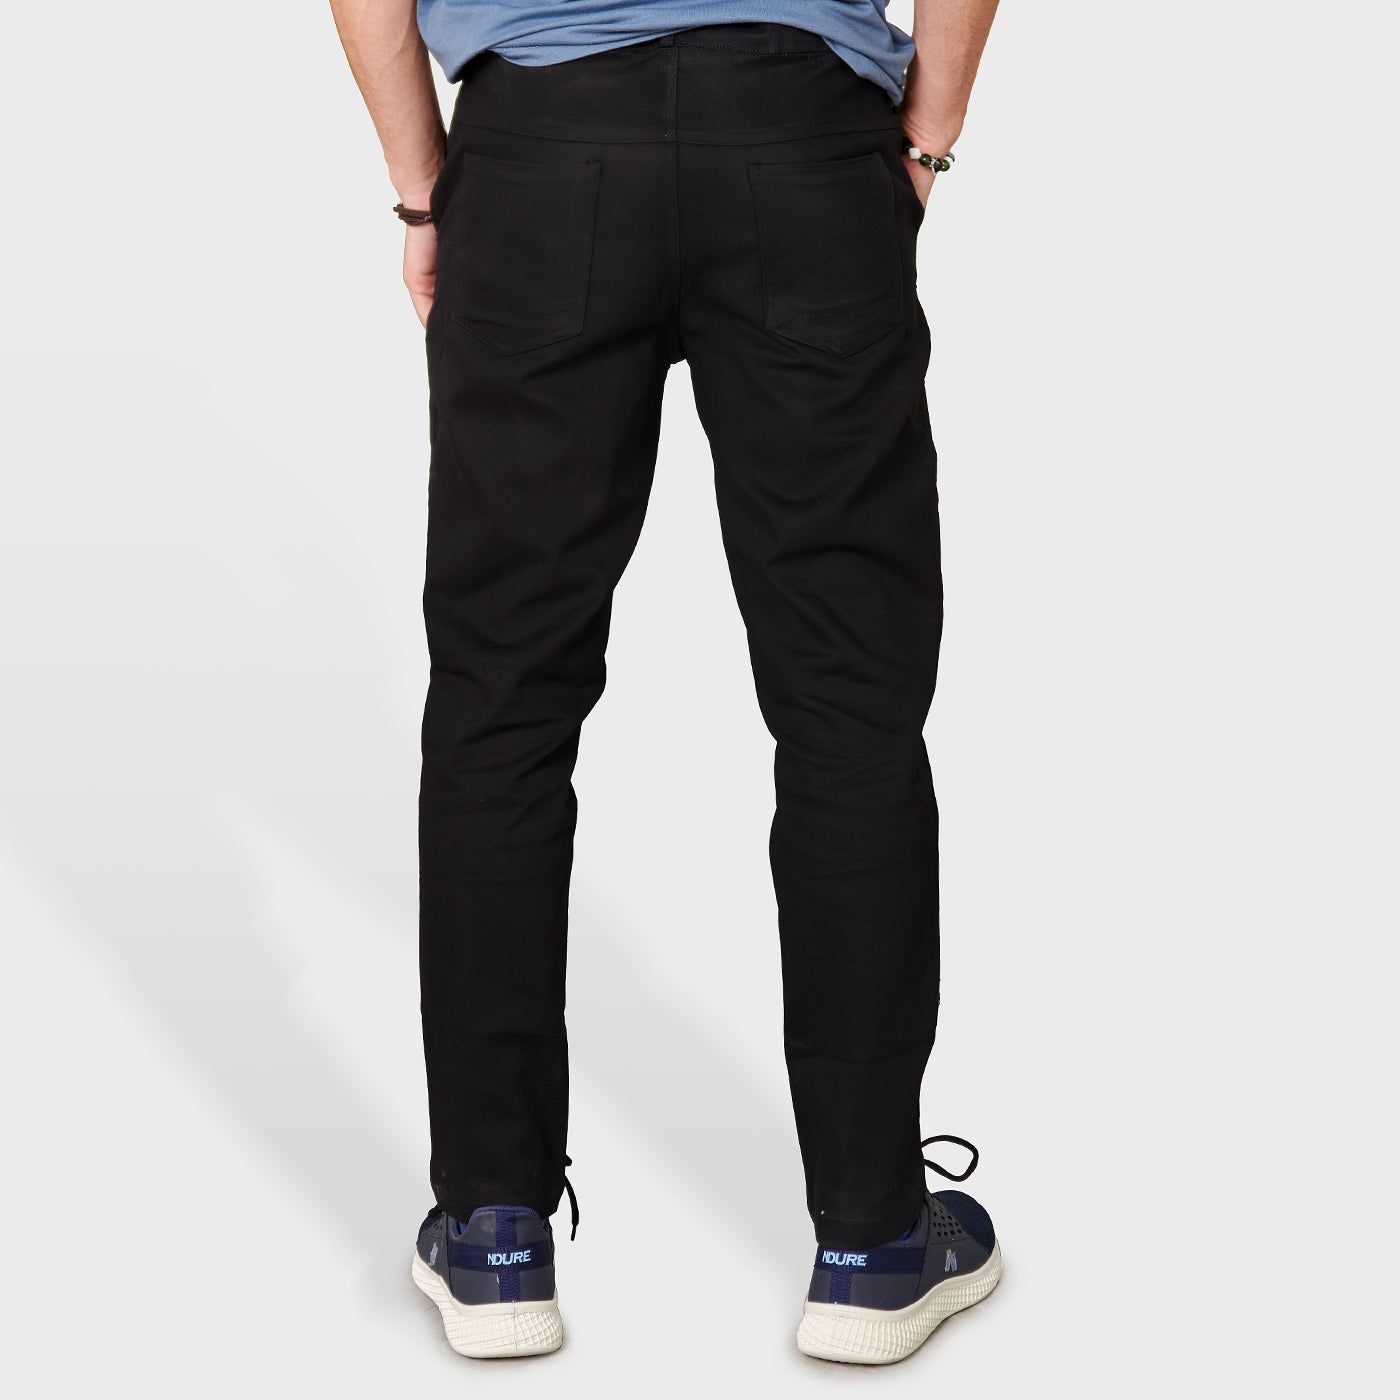 Buy BLACK Stylish Chino Pants – Ndure.com